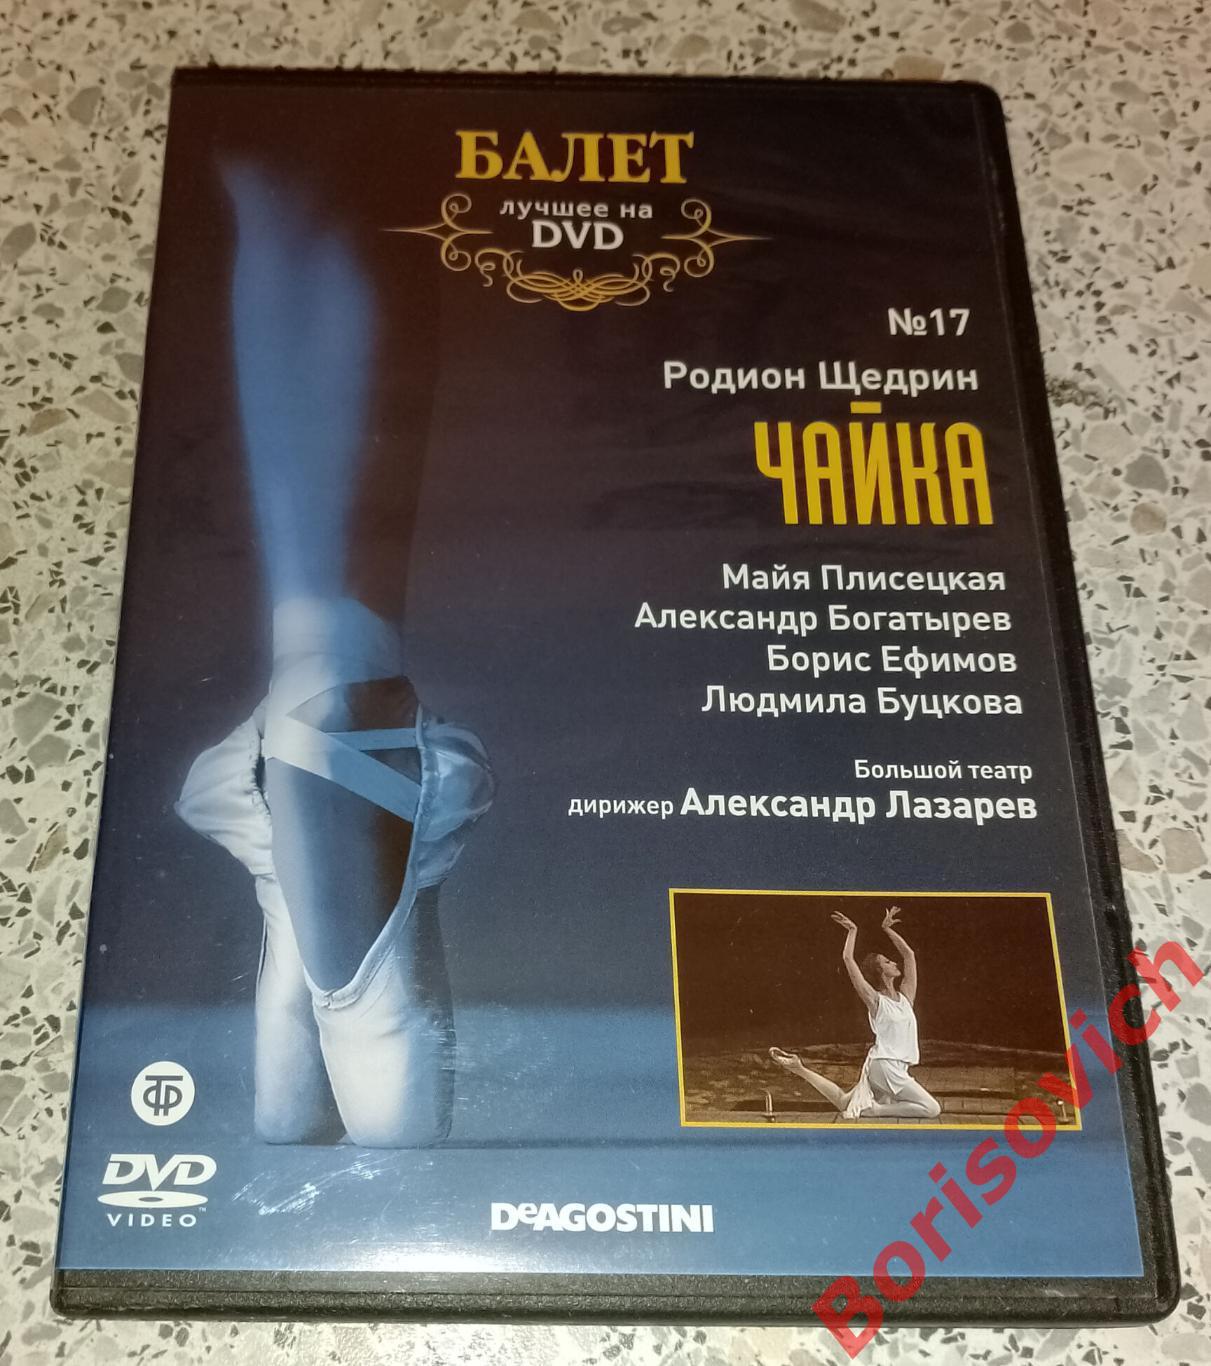 Балет лучшее на DVD Родион Щедрин ЧАЙКА